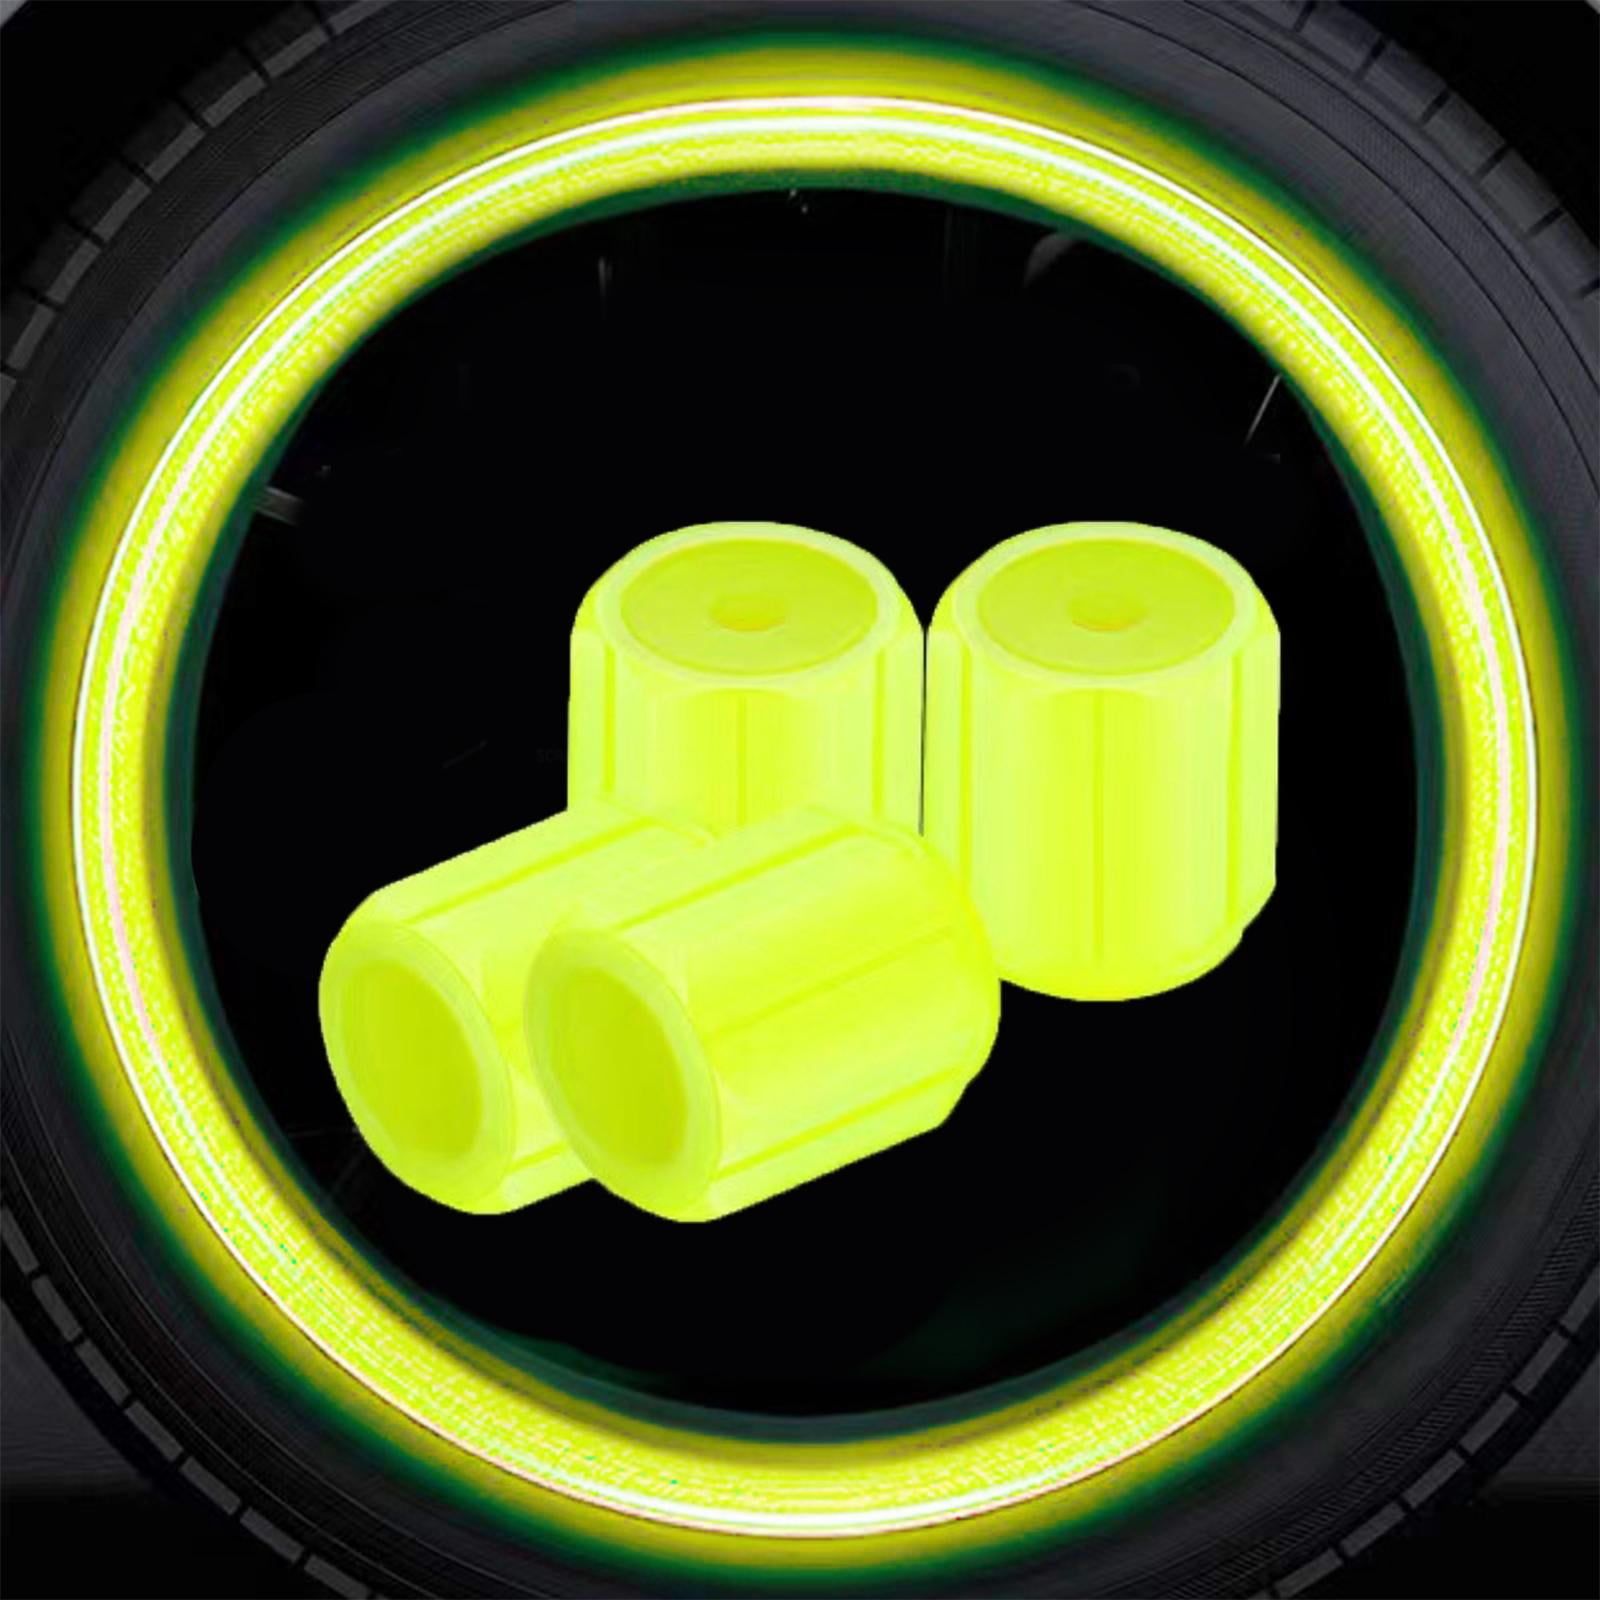 MAPPERZ Tire Valve Stem Caps Universal for Car, Bikes, Trucks, Luminous  Fluorescent Glow in The Dark Air Cover, Tire Pressure Radium Caps